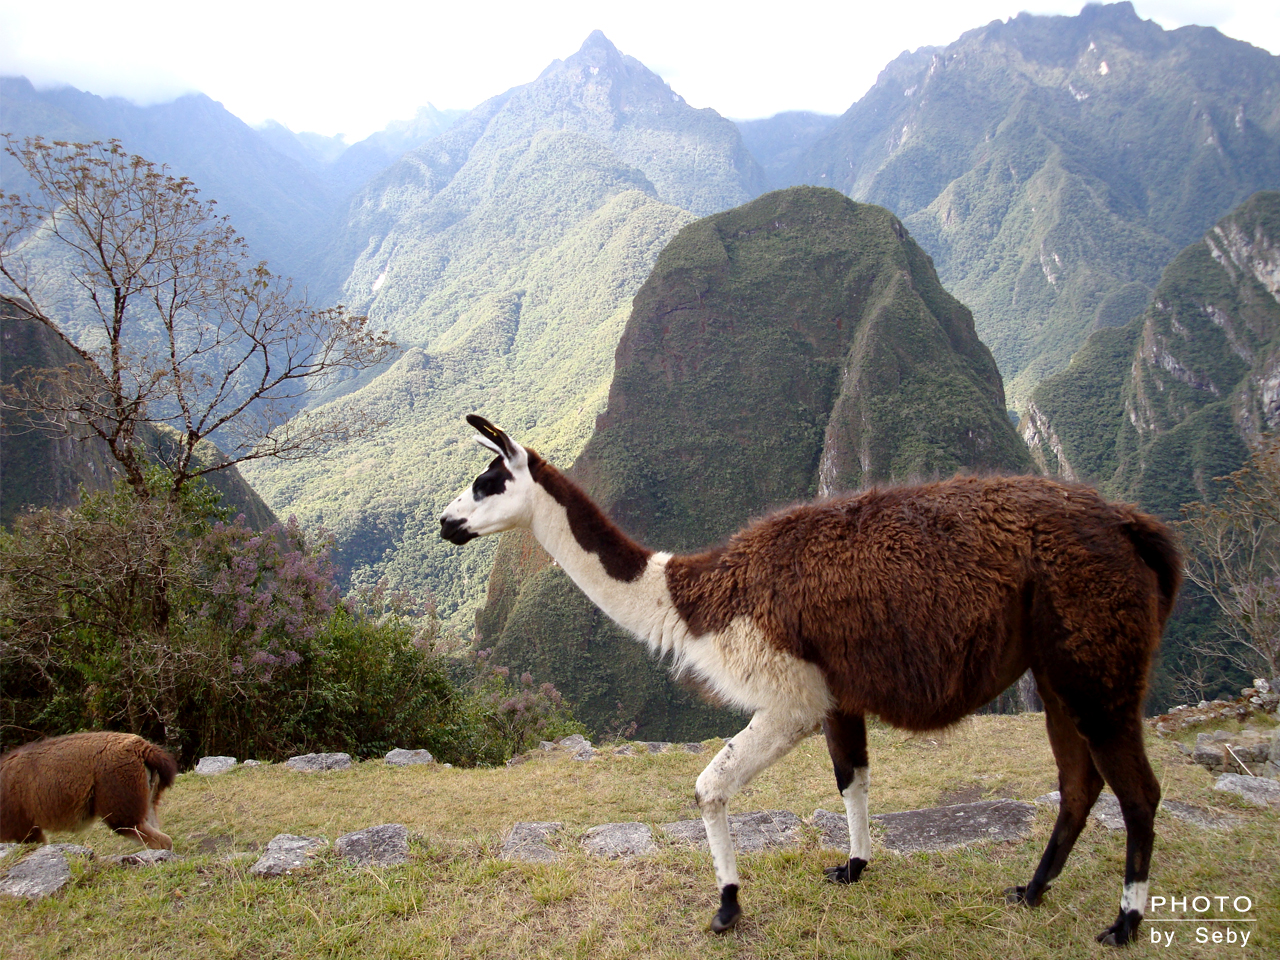 La diversidad geográfica y climática del Perú origina su extraordinaria